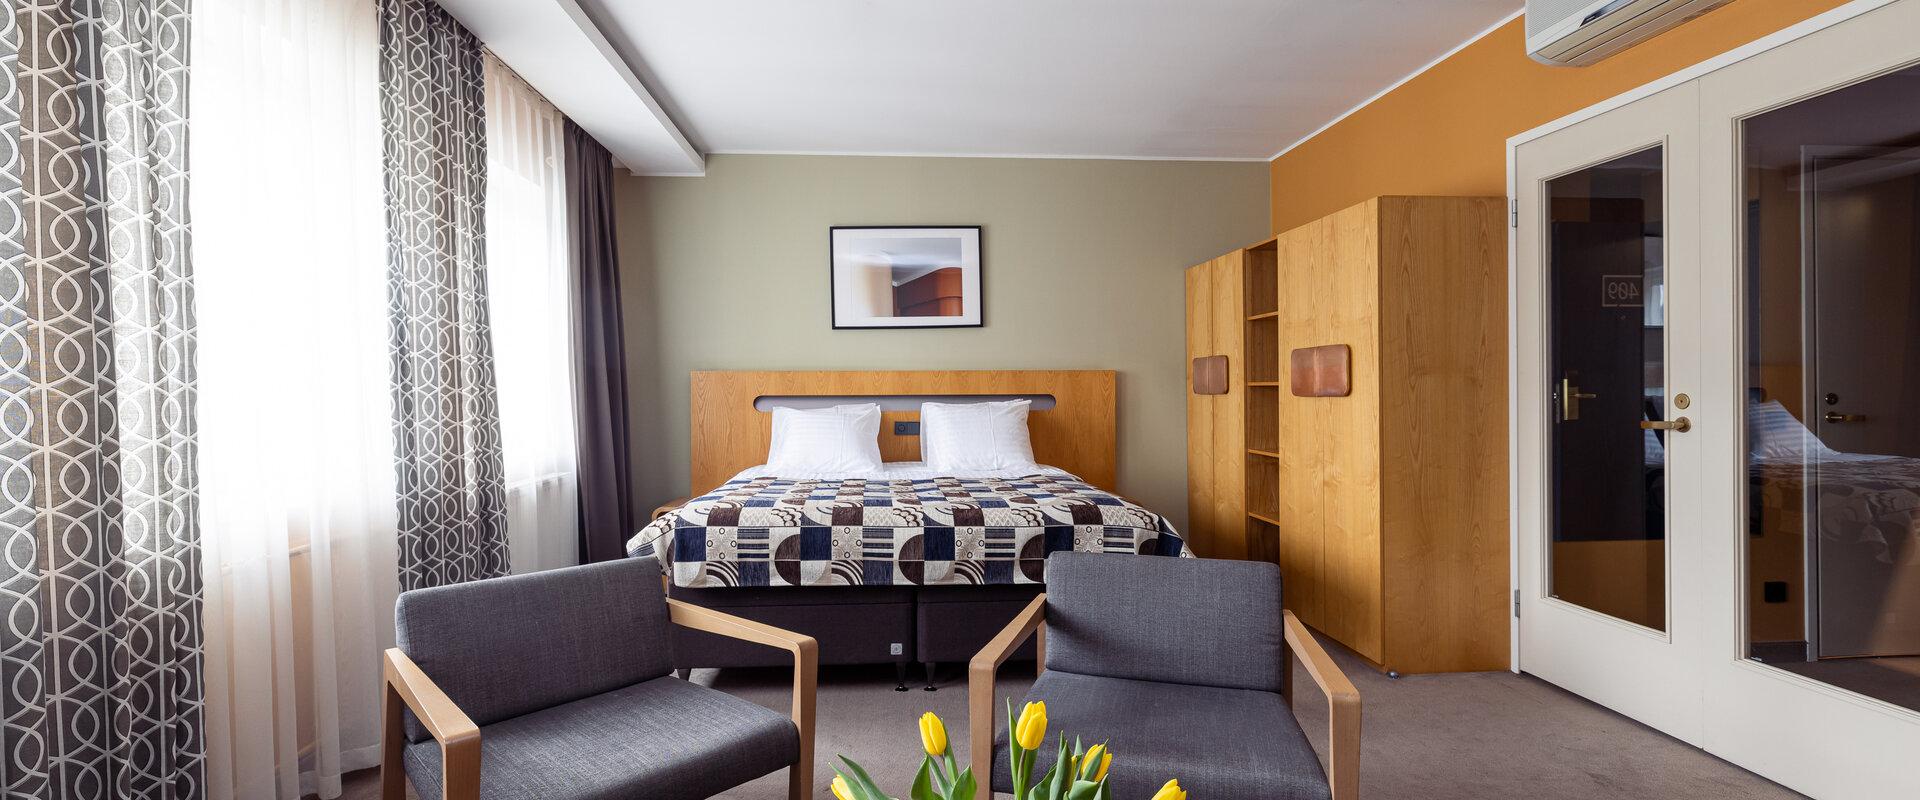 Deluxe Zimmer des Hotels Soho mit breitem Bett